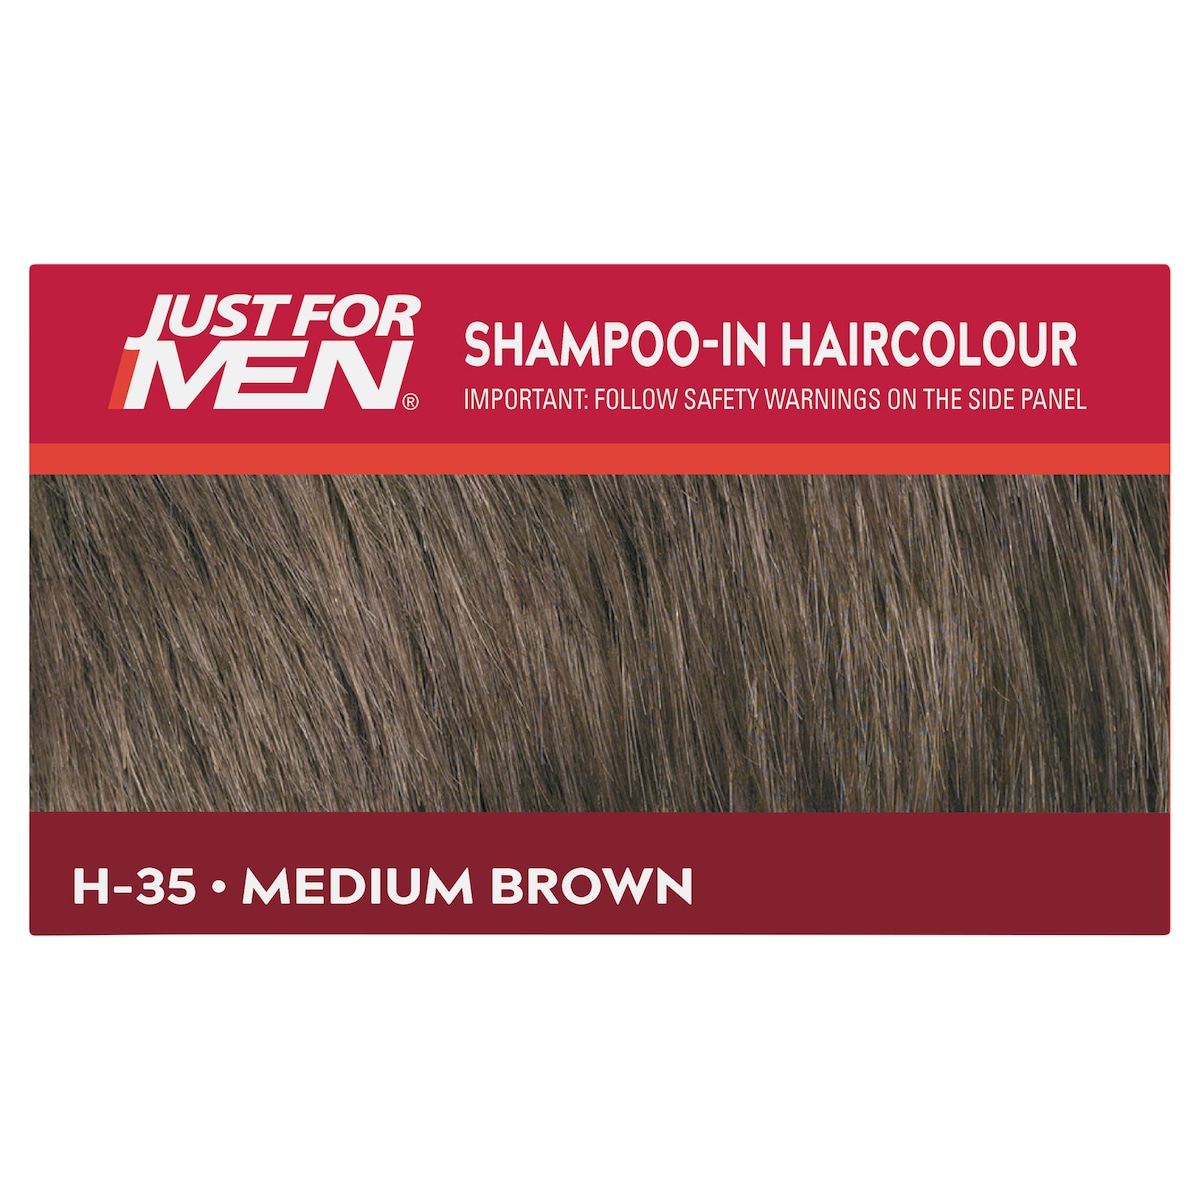 Just for Men Shampoo-In Hair Colour Medium Brown